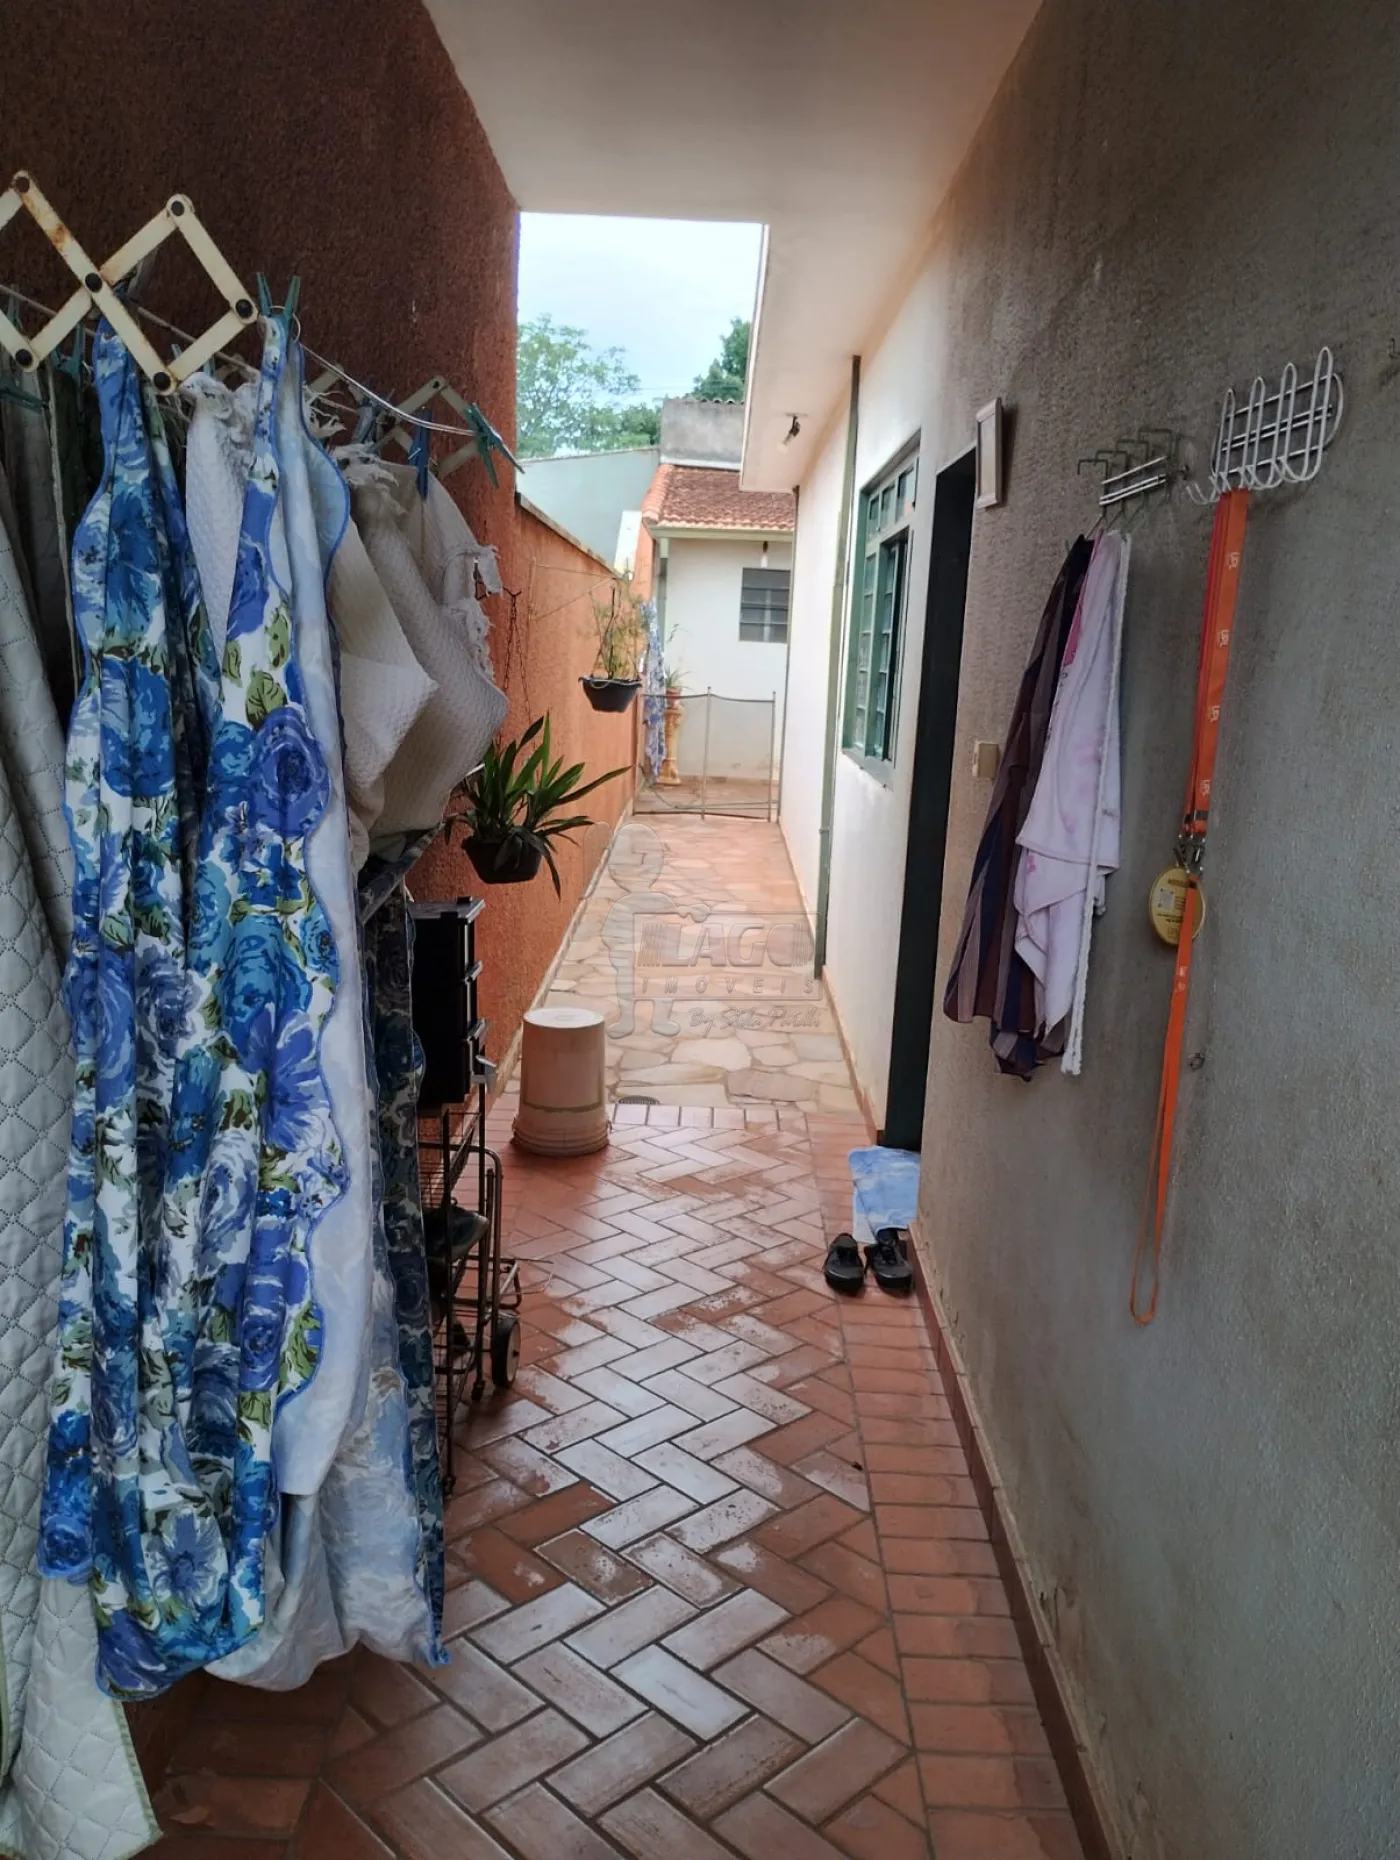 Comprar Casas / Padrão em Ribeirão Preto R$ 530.000,00 - Foto 1